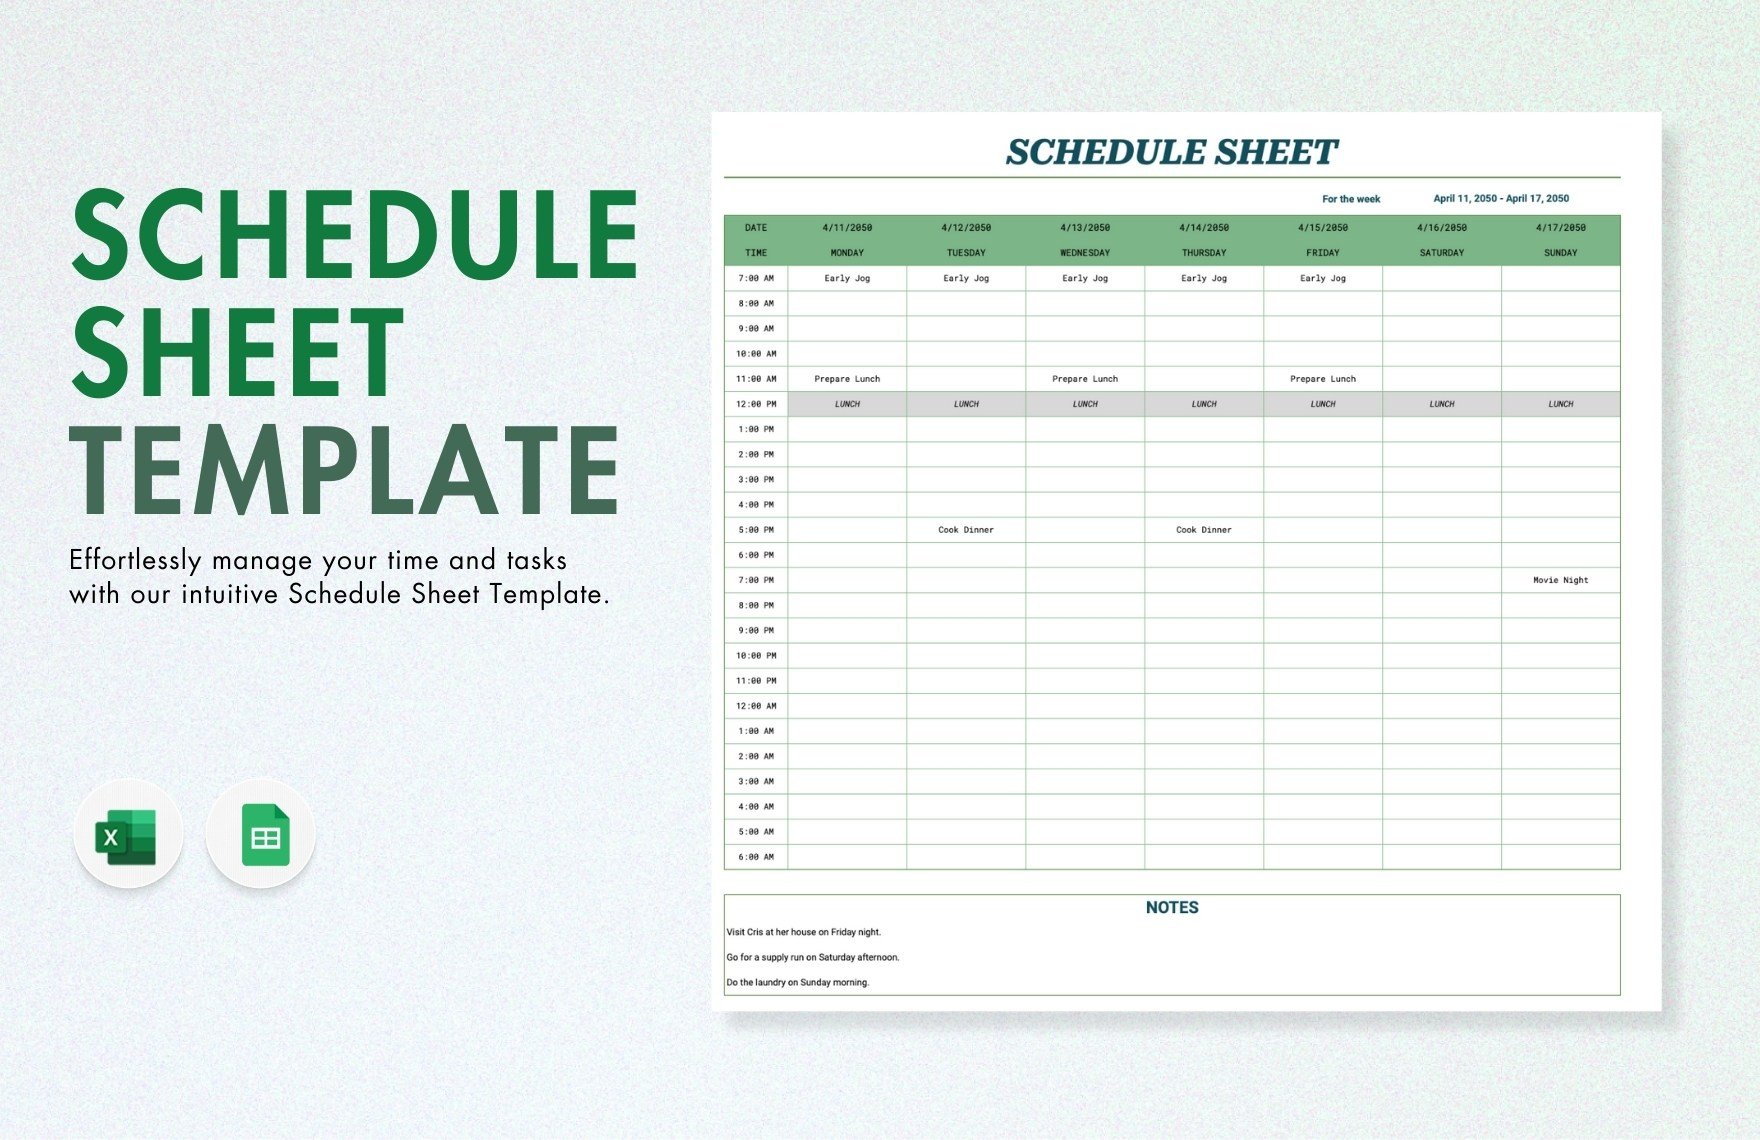 Schedule Sheet Template